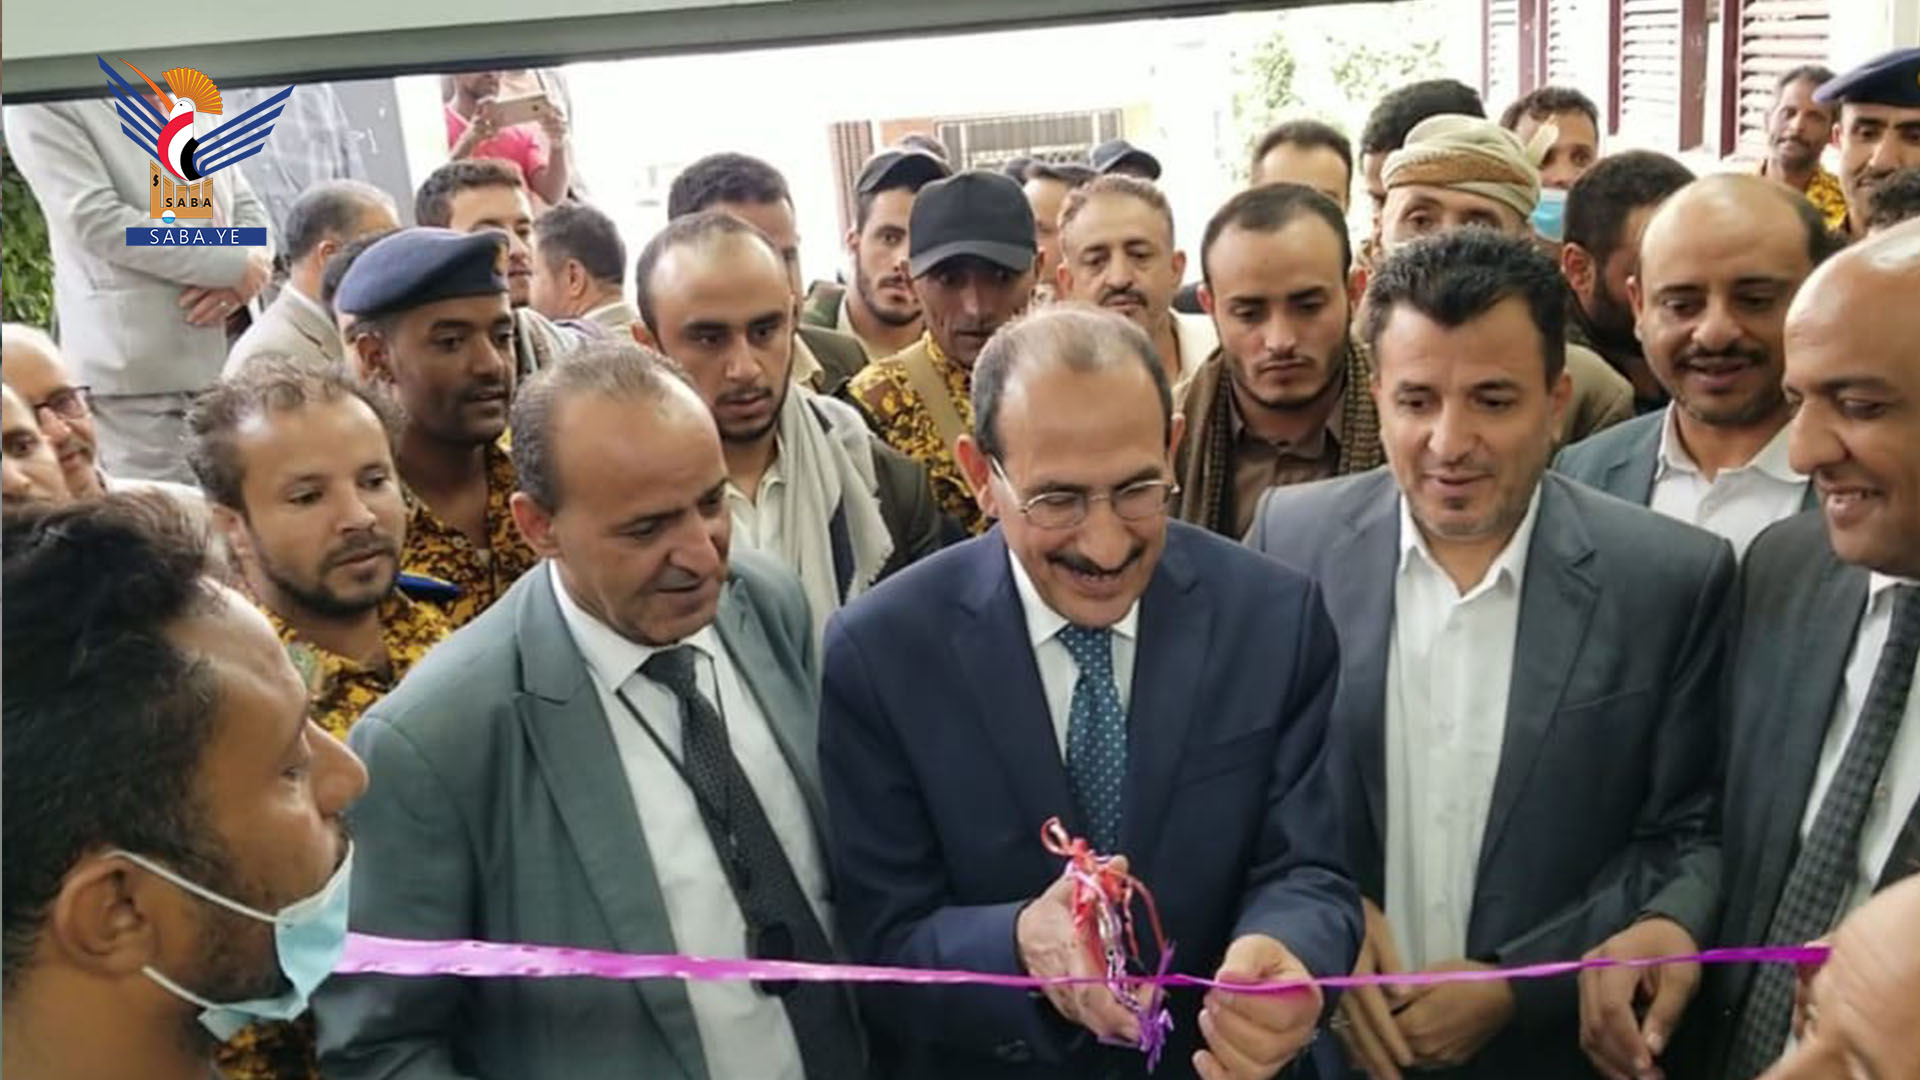 Le ministre de la Santé inaugure un centre de chirurgie et de transplantation rénales à l'hôpital Al-Thawra de Sana'a